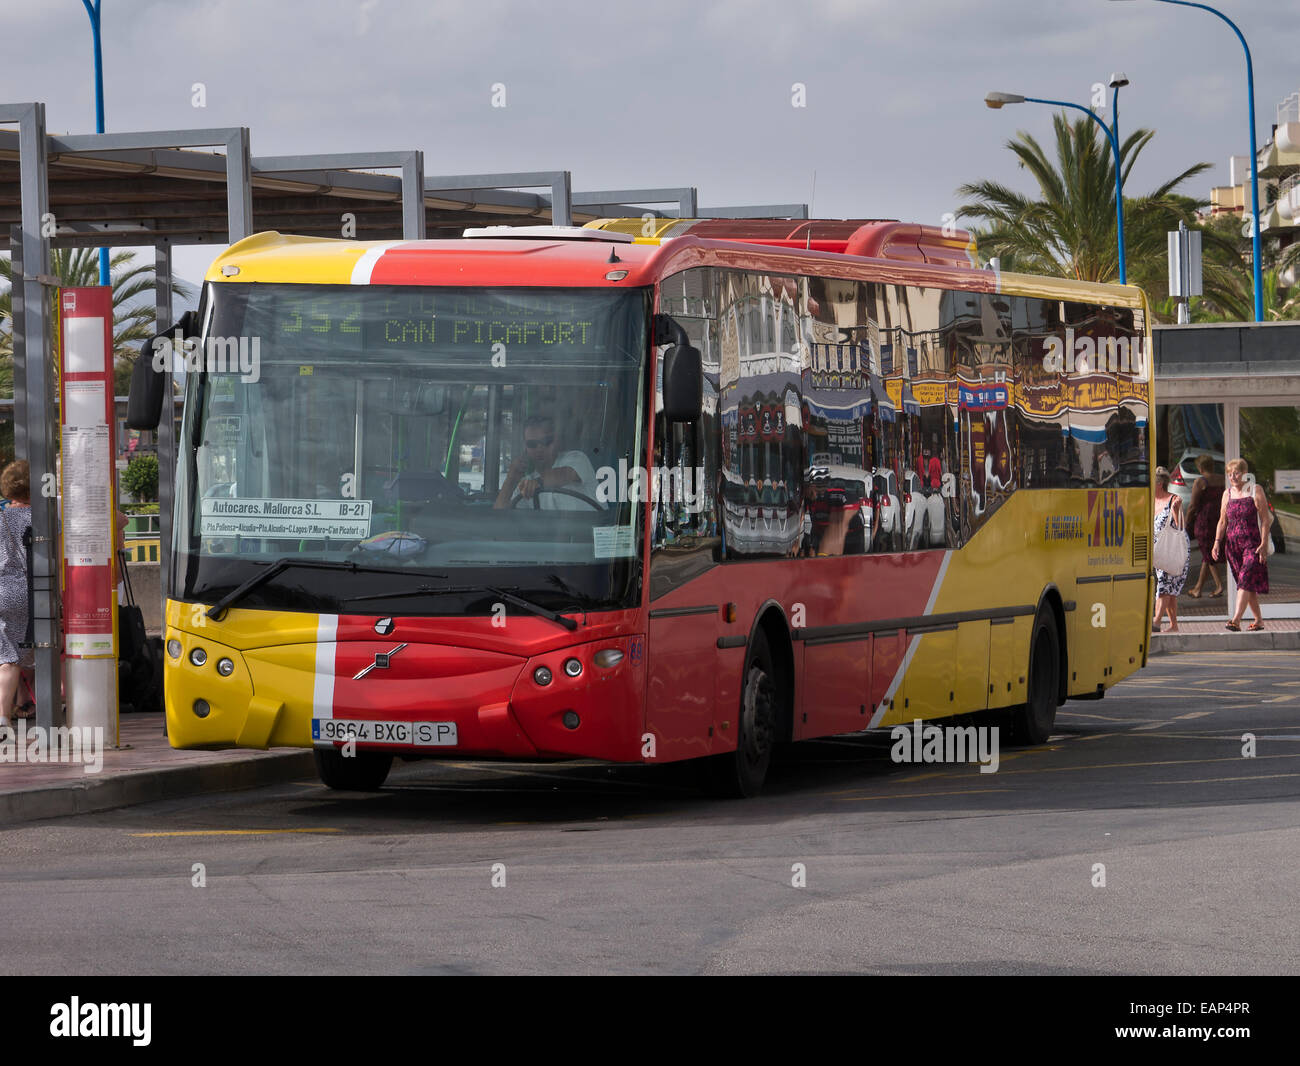 Service Bus Peurto Pollensa, Majorca Stock Photo